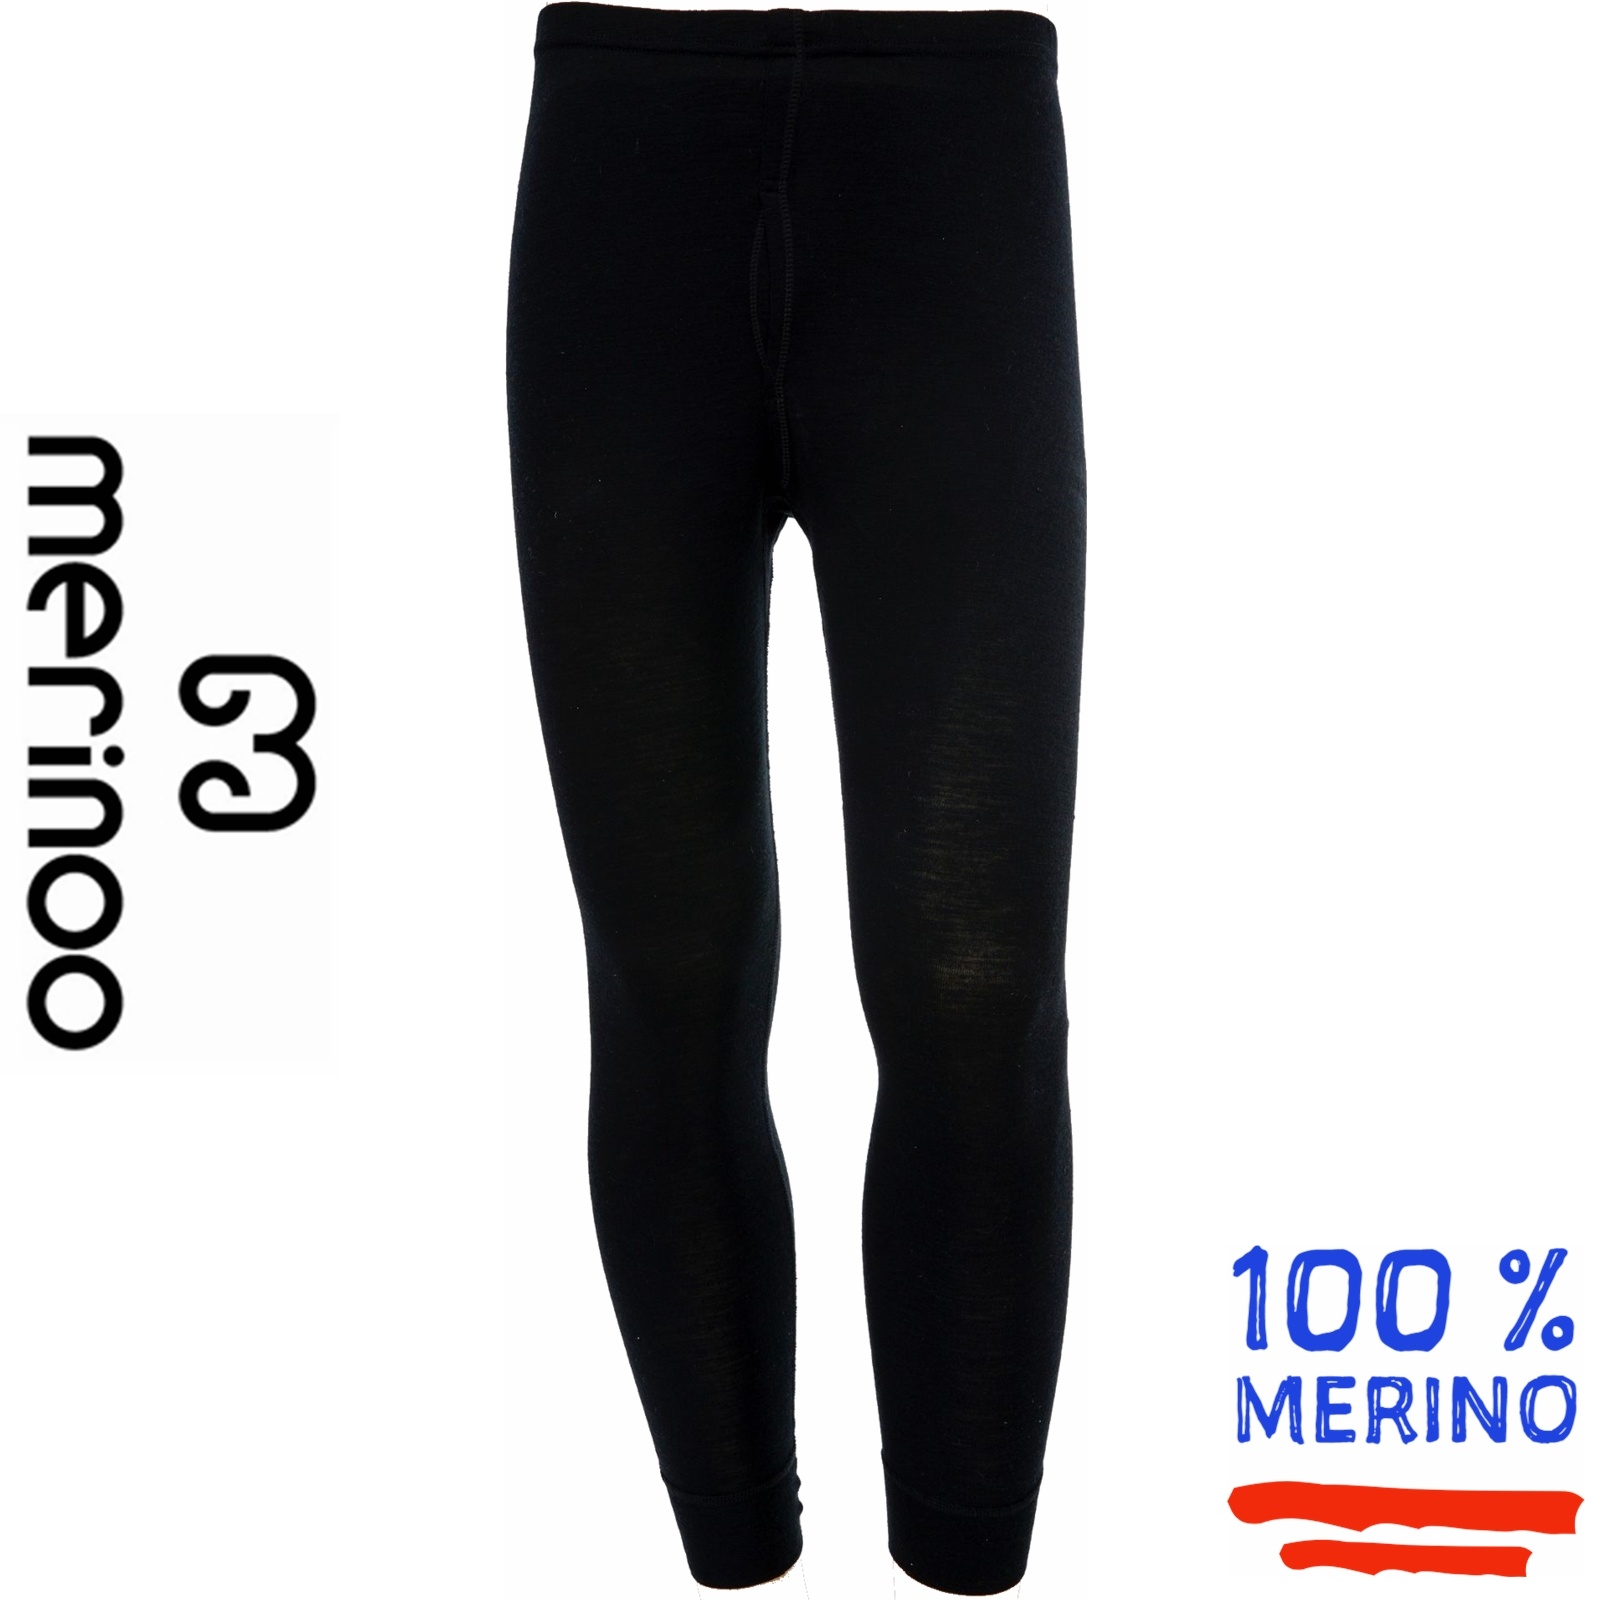 Merinoo (100 merinowol) Merinoo | 200 | Heren thermobroek